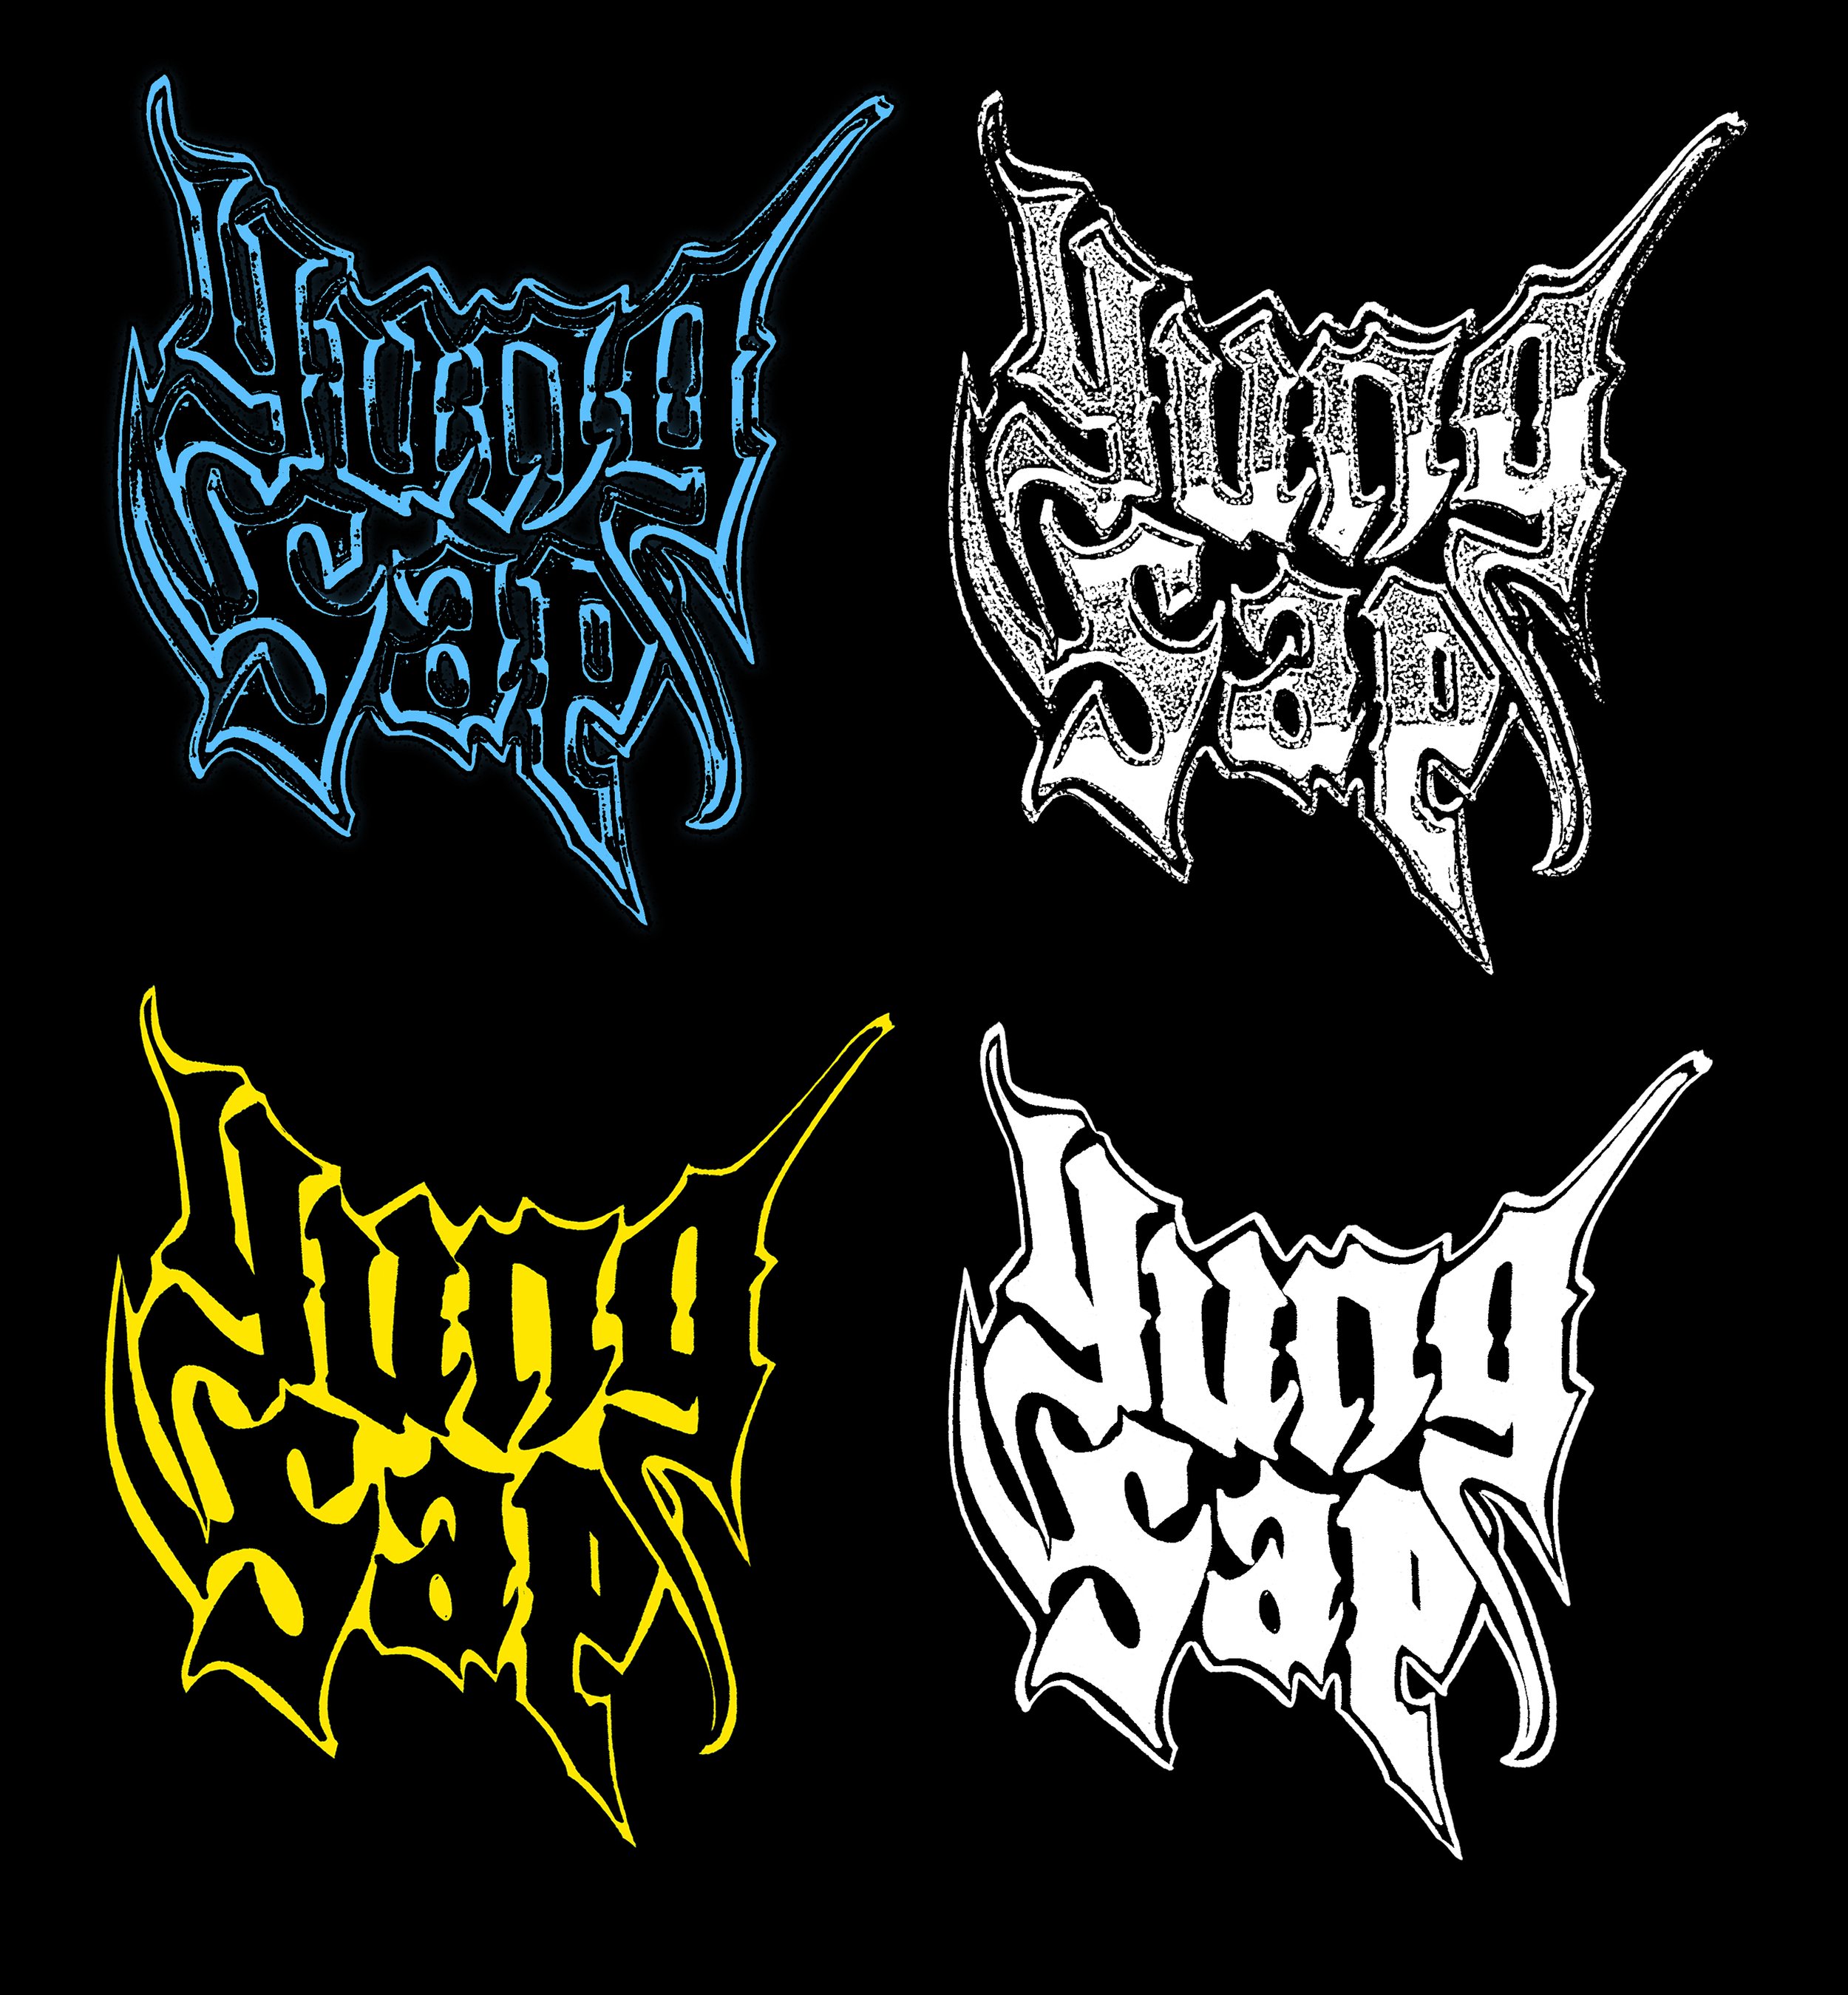 yung sap logos .jpg